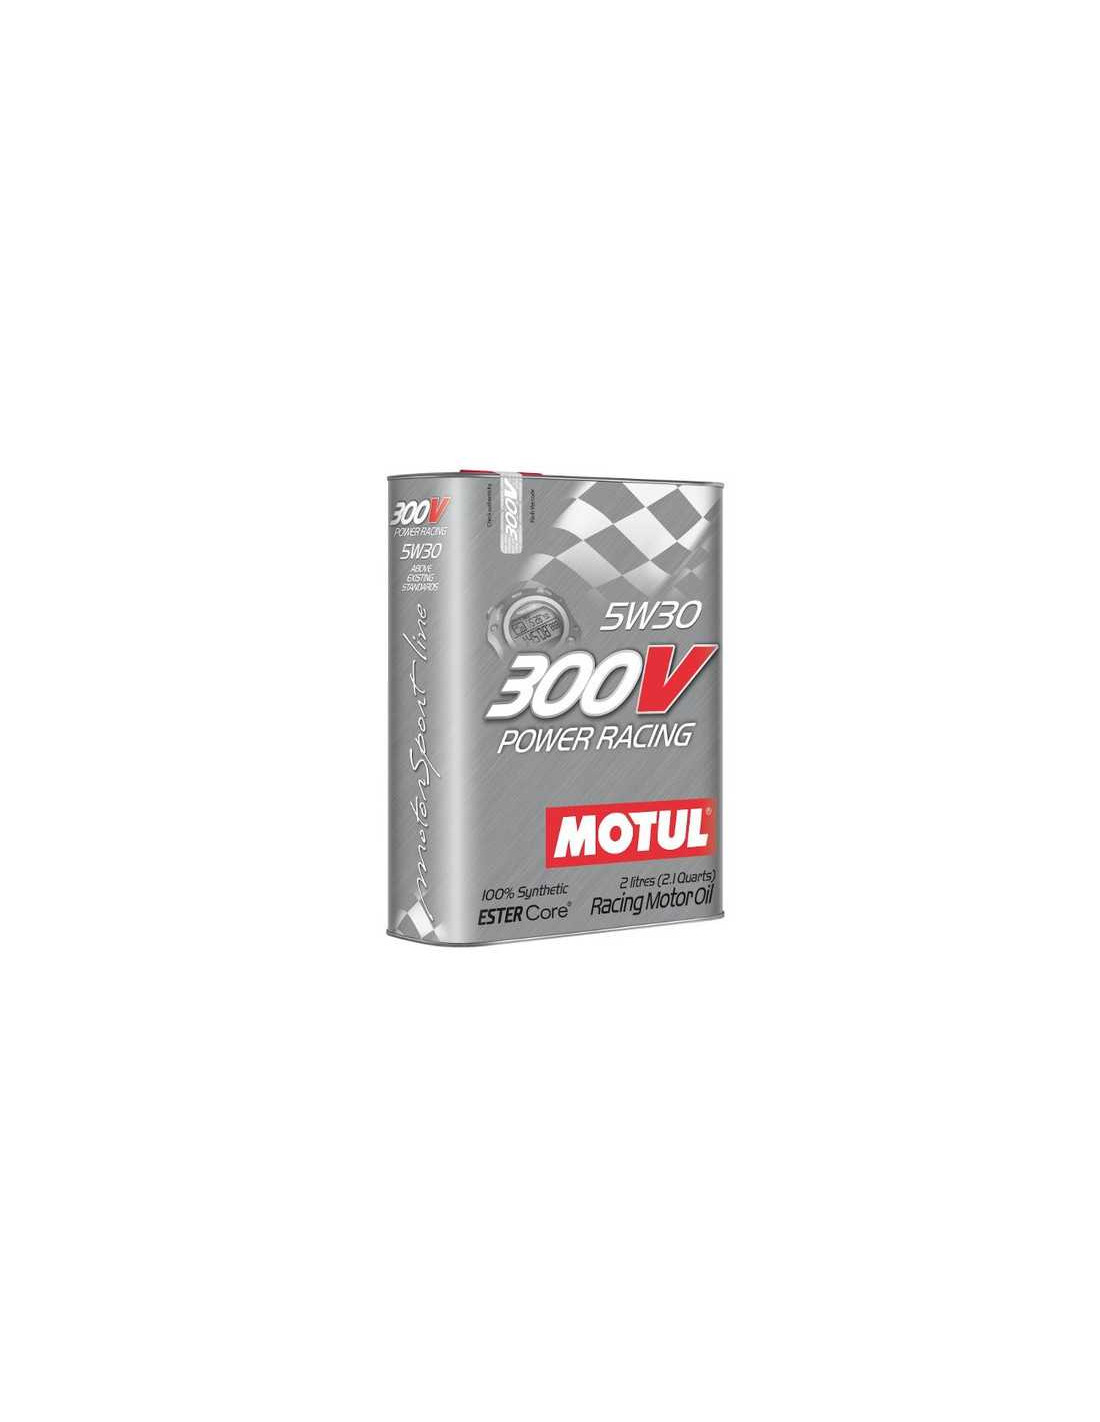 Motul 300V Power Competition Racing Motor Oil 5W40 - 2 Liter